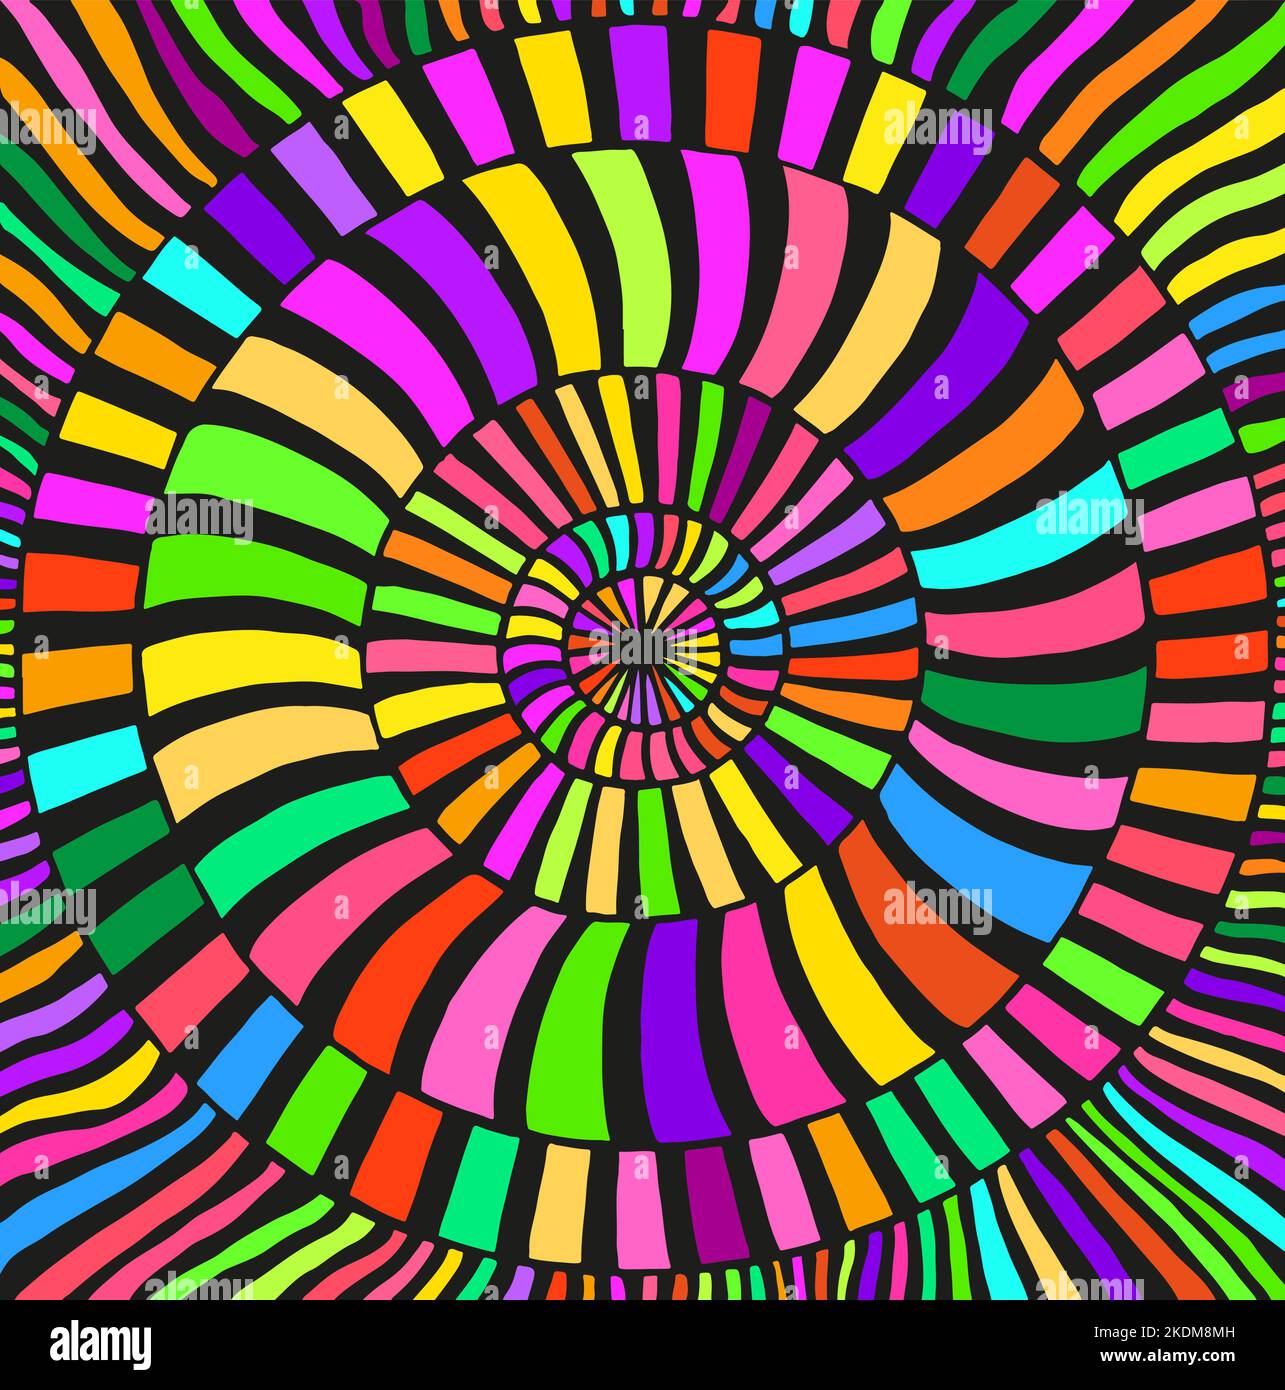 Arc-en-ciel psychédélique motif coloré avec de nombreux cercles de rayures tabby vagues. Un art fantastique avec une texture décorative. Motif surréaliste. Illustration de Vecteur